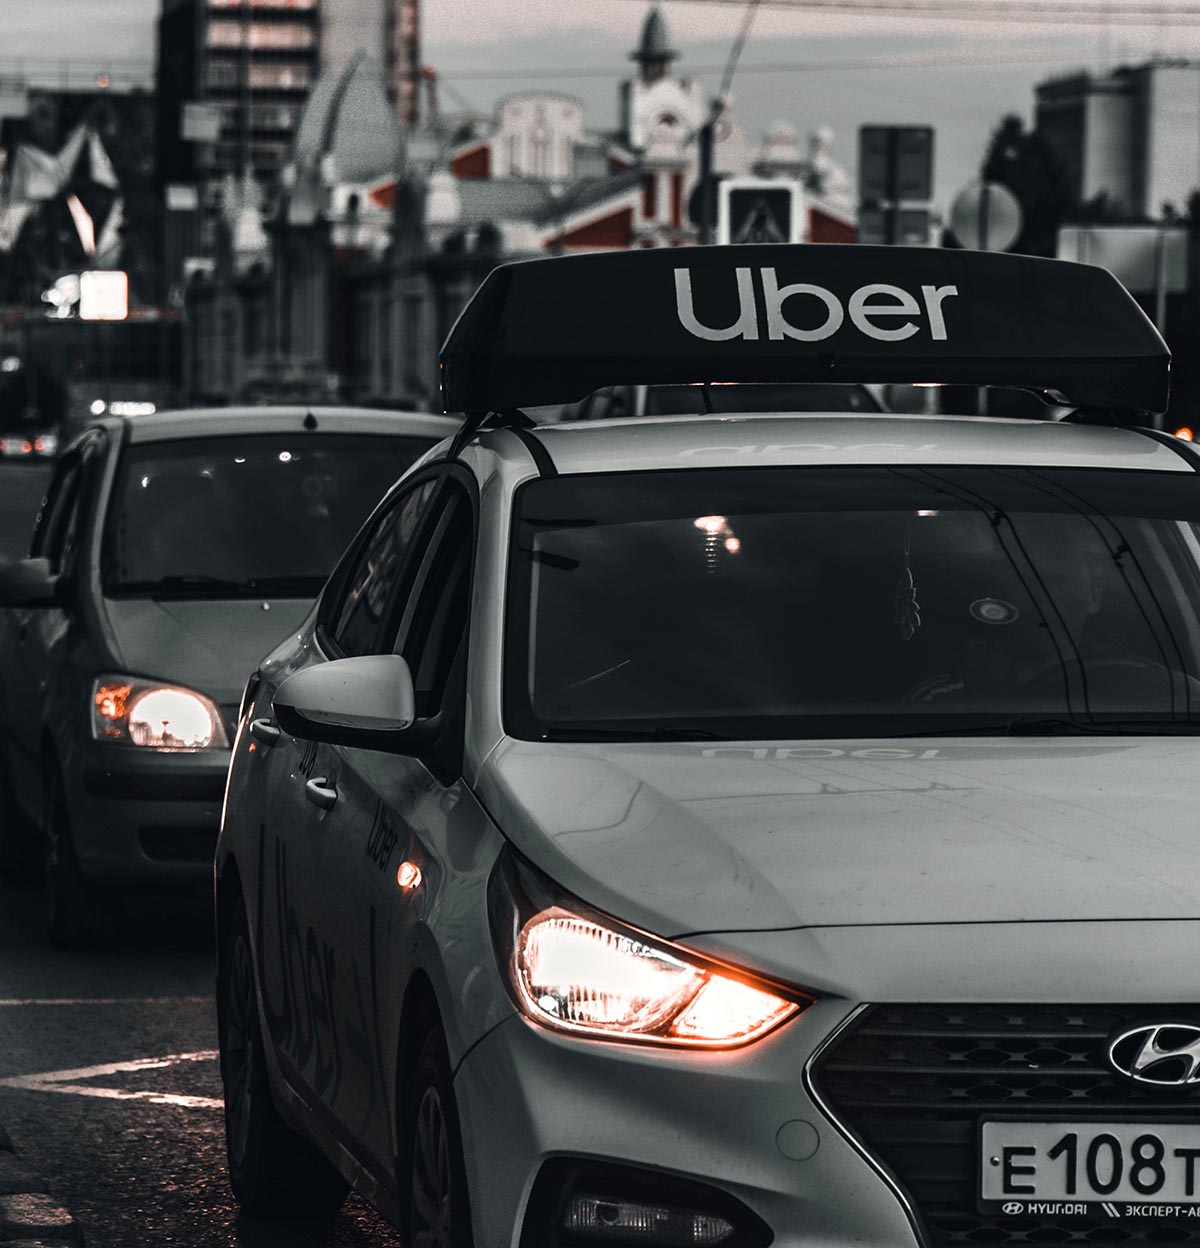 'Absolutamente' insustentável, diz denunciante sobre modelo de negócios da Uber